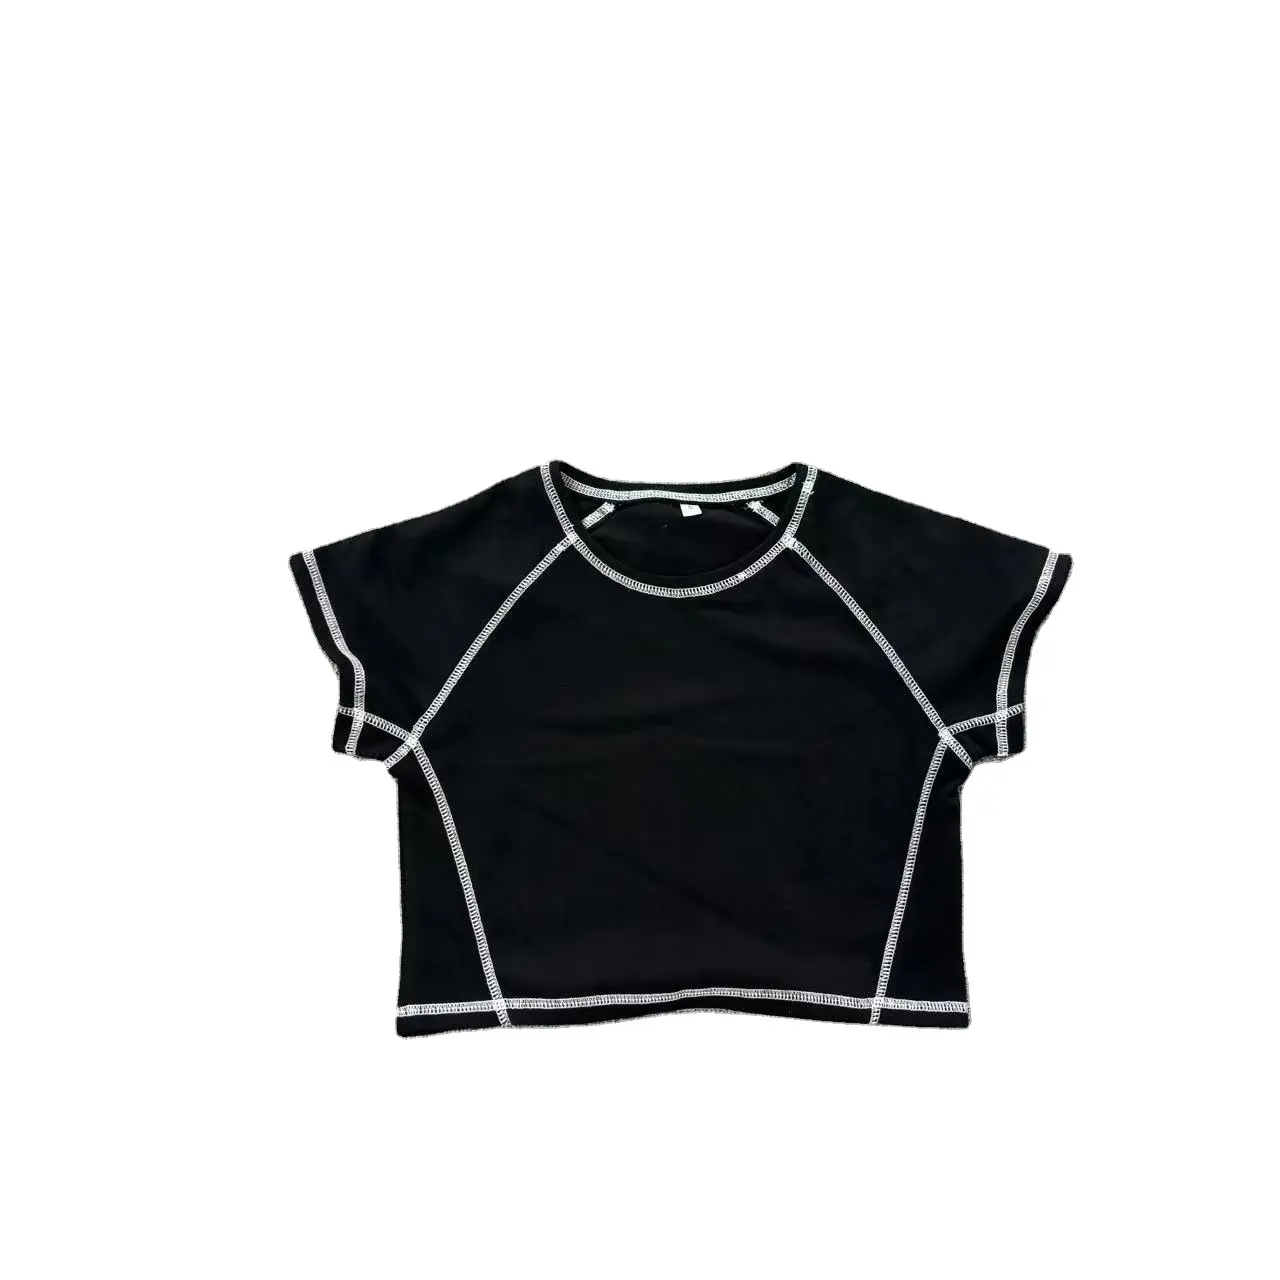 Camiseta regata 100% algodão puro 230gsm, blusa regata com gola redonda, top regata lisa, costura reversa, ideal para uso em garagem, venda imperdível